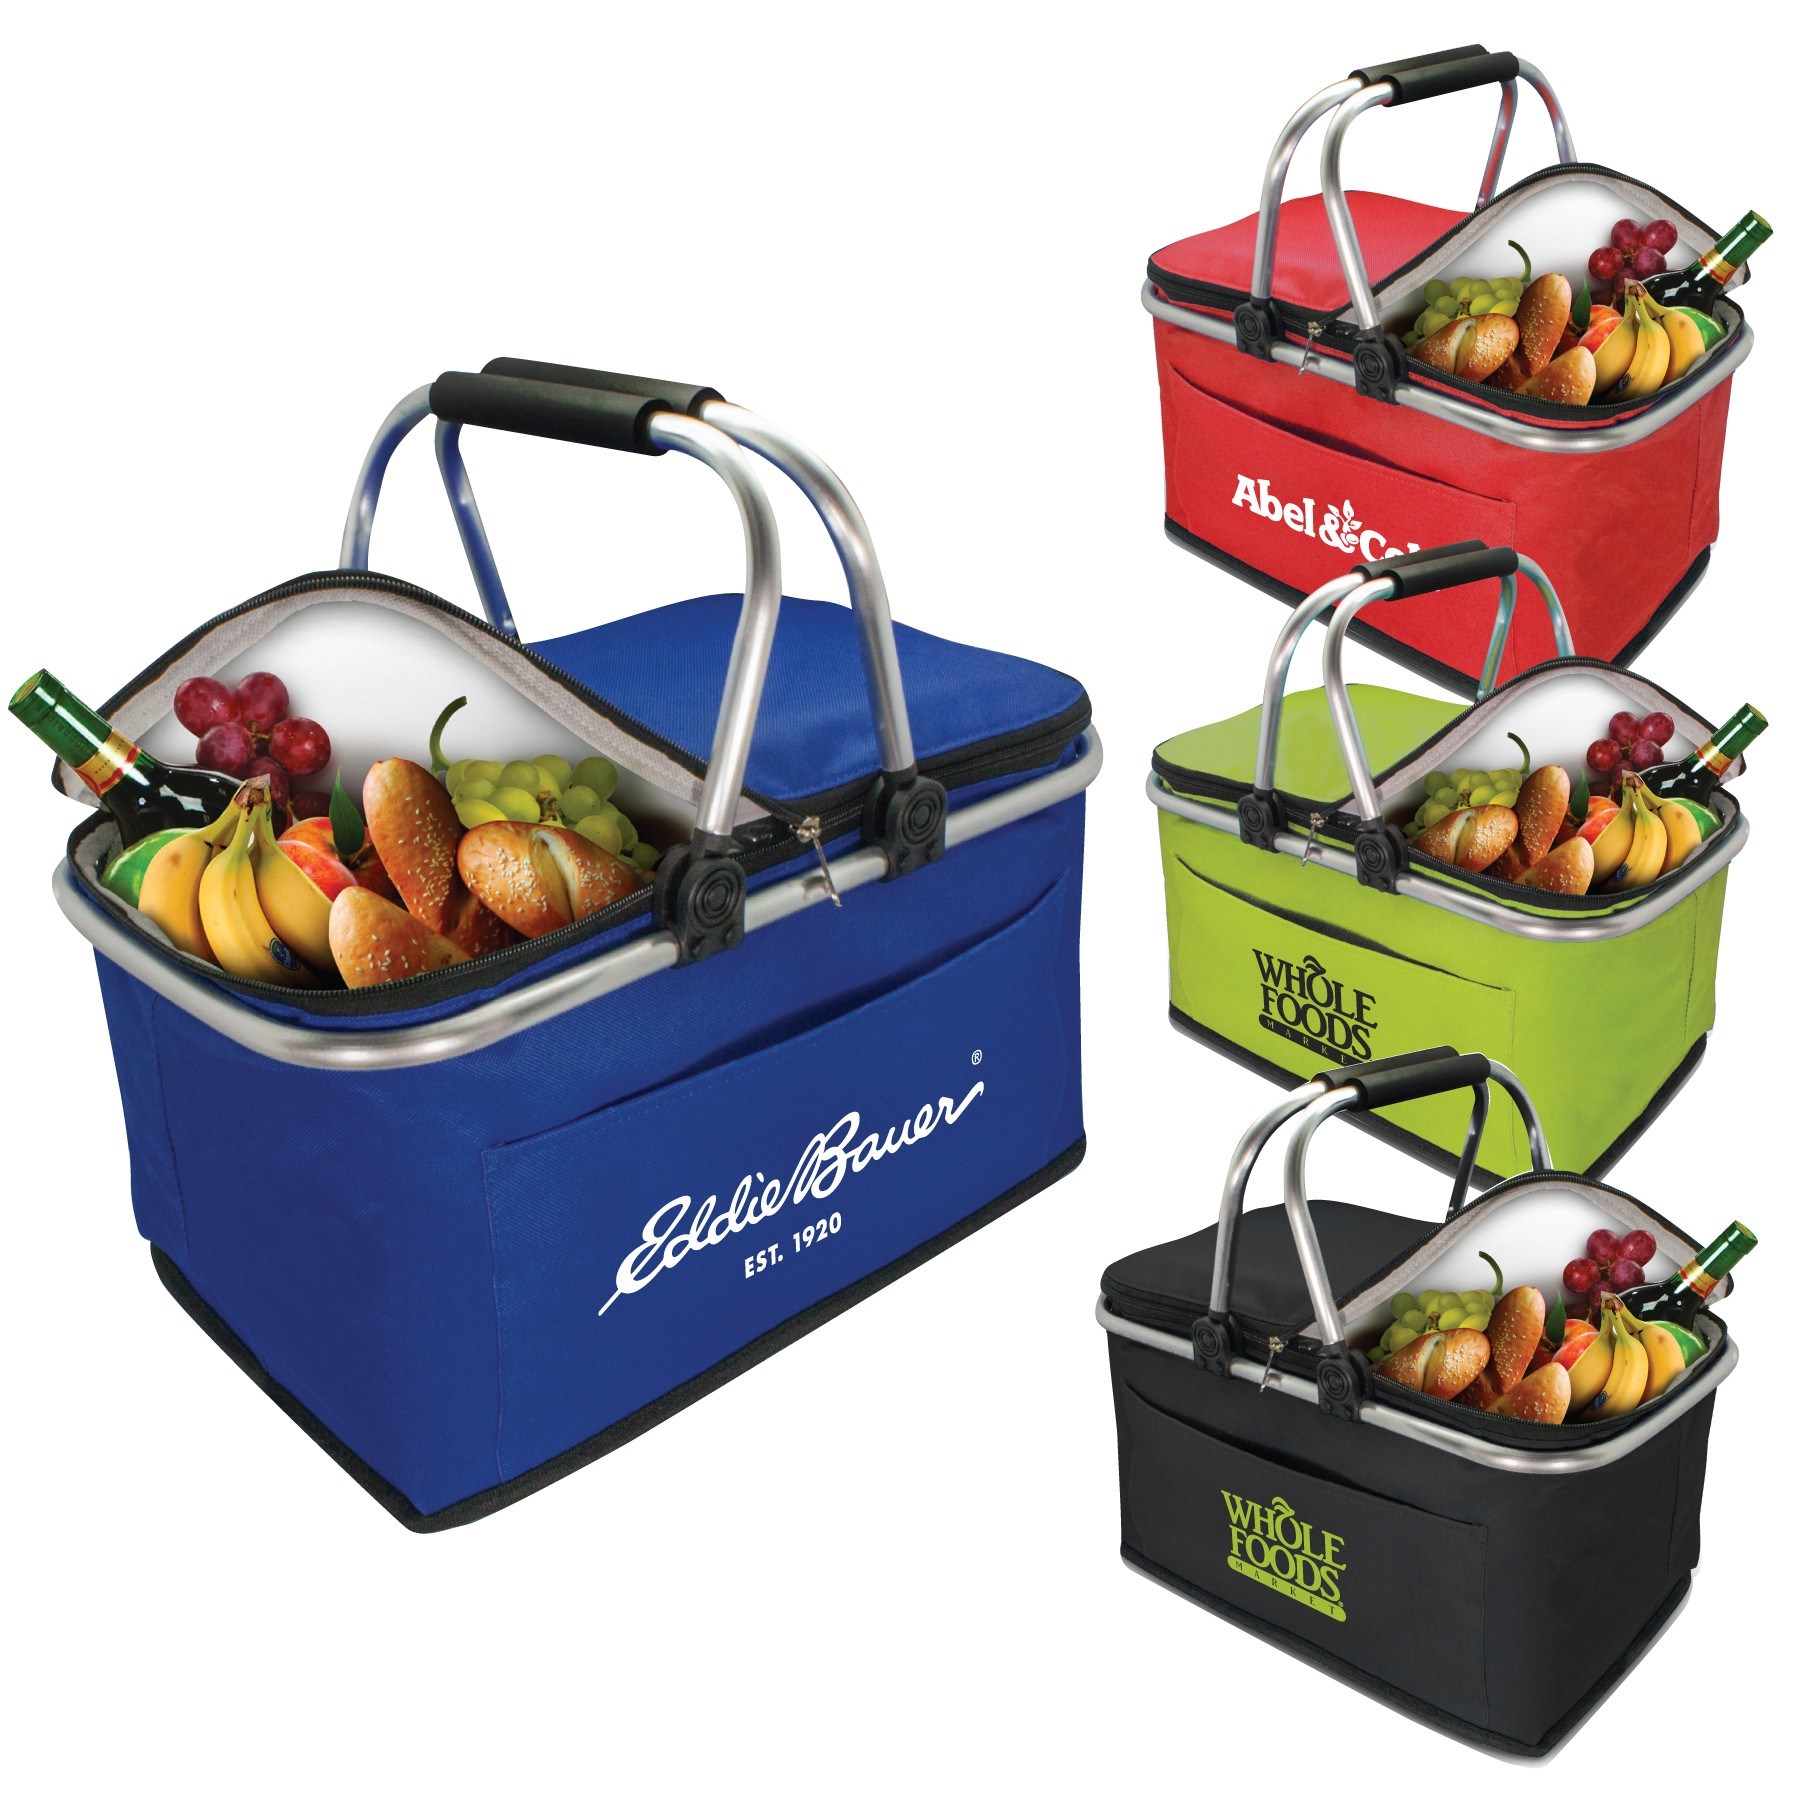 Custom-Insulated-Thermal-Folding-Basket-Food-Delivery-Picnic-Camping-Handbag-Lunch-Basket-Cooler-Bag-Picnic-Basket (1)